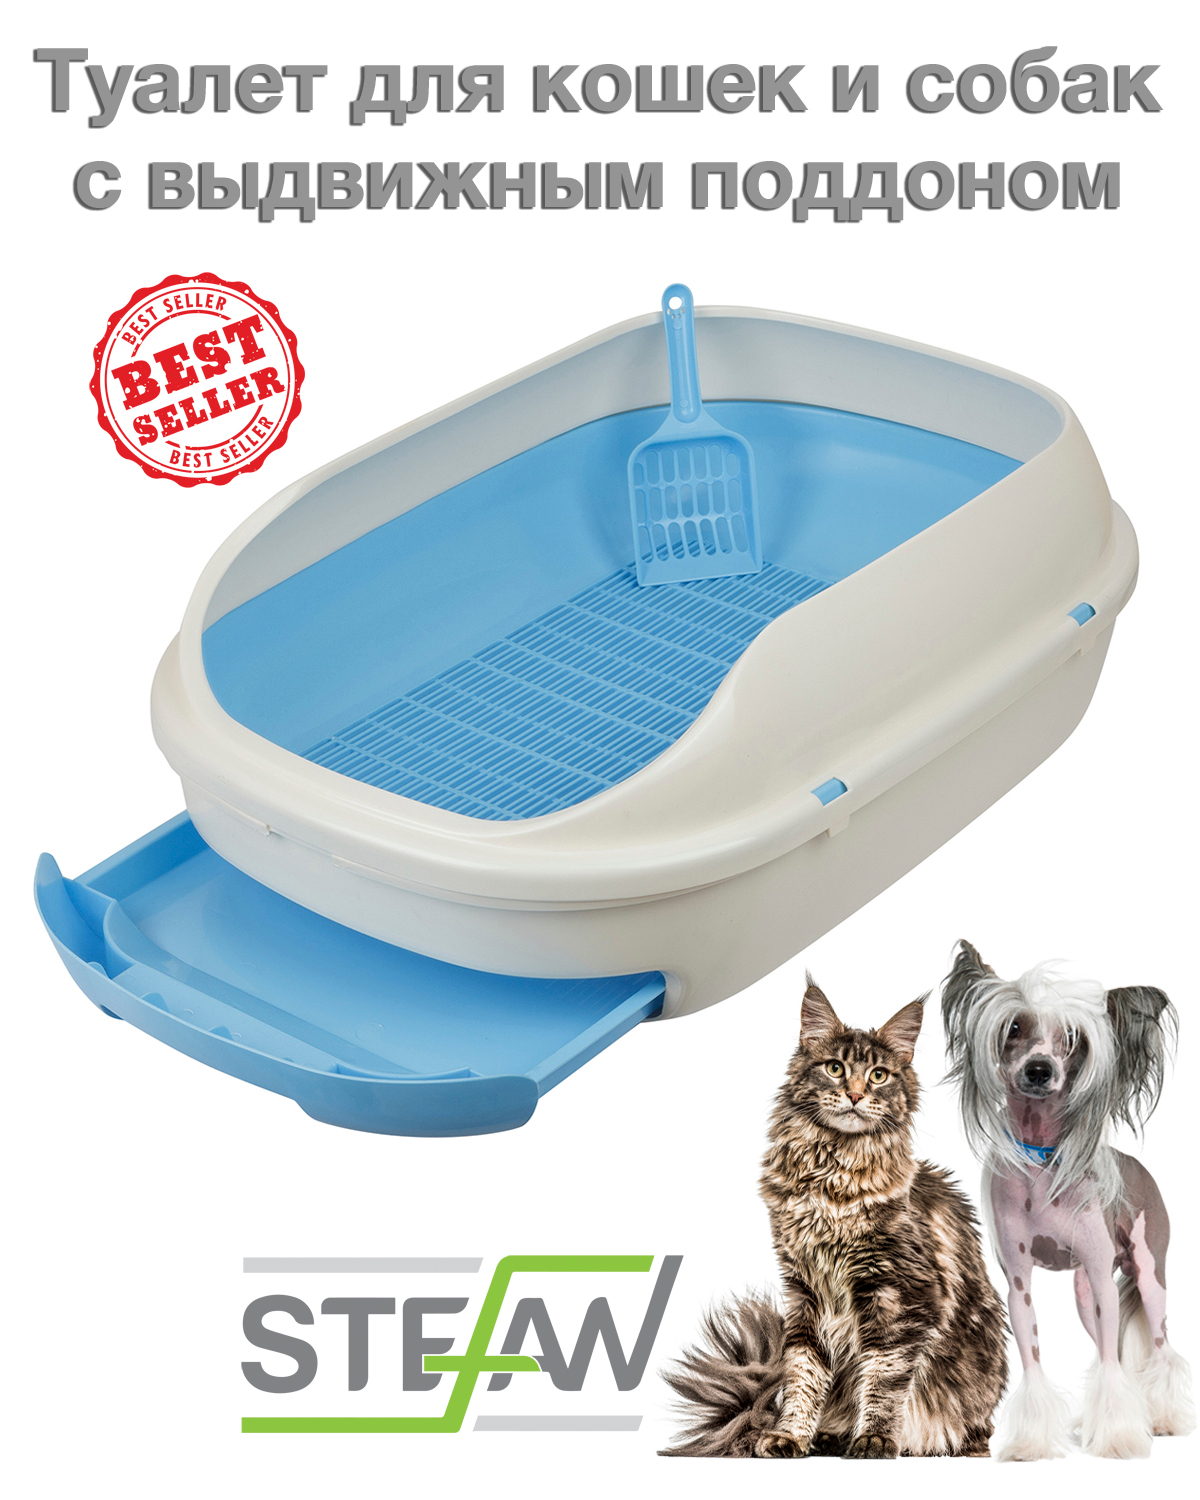 Stefan / туалет-лоток с выдвижным поддоном для кошек с совком